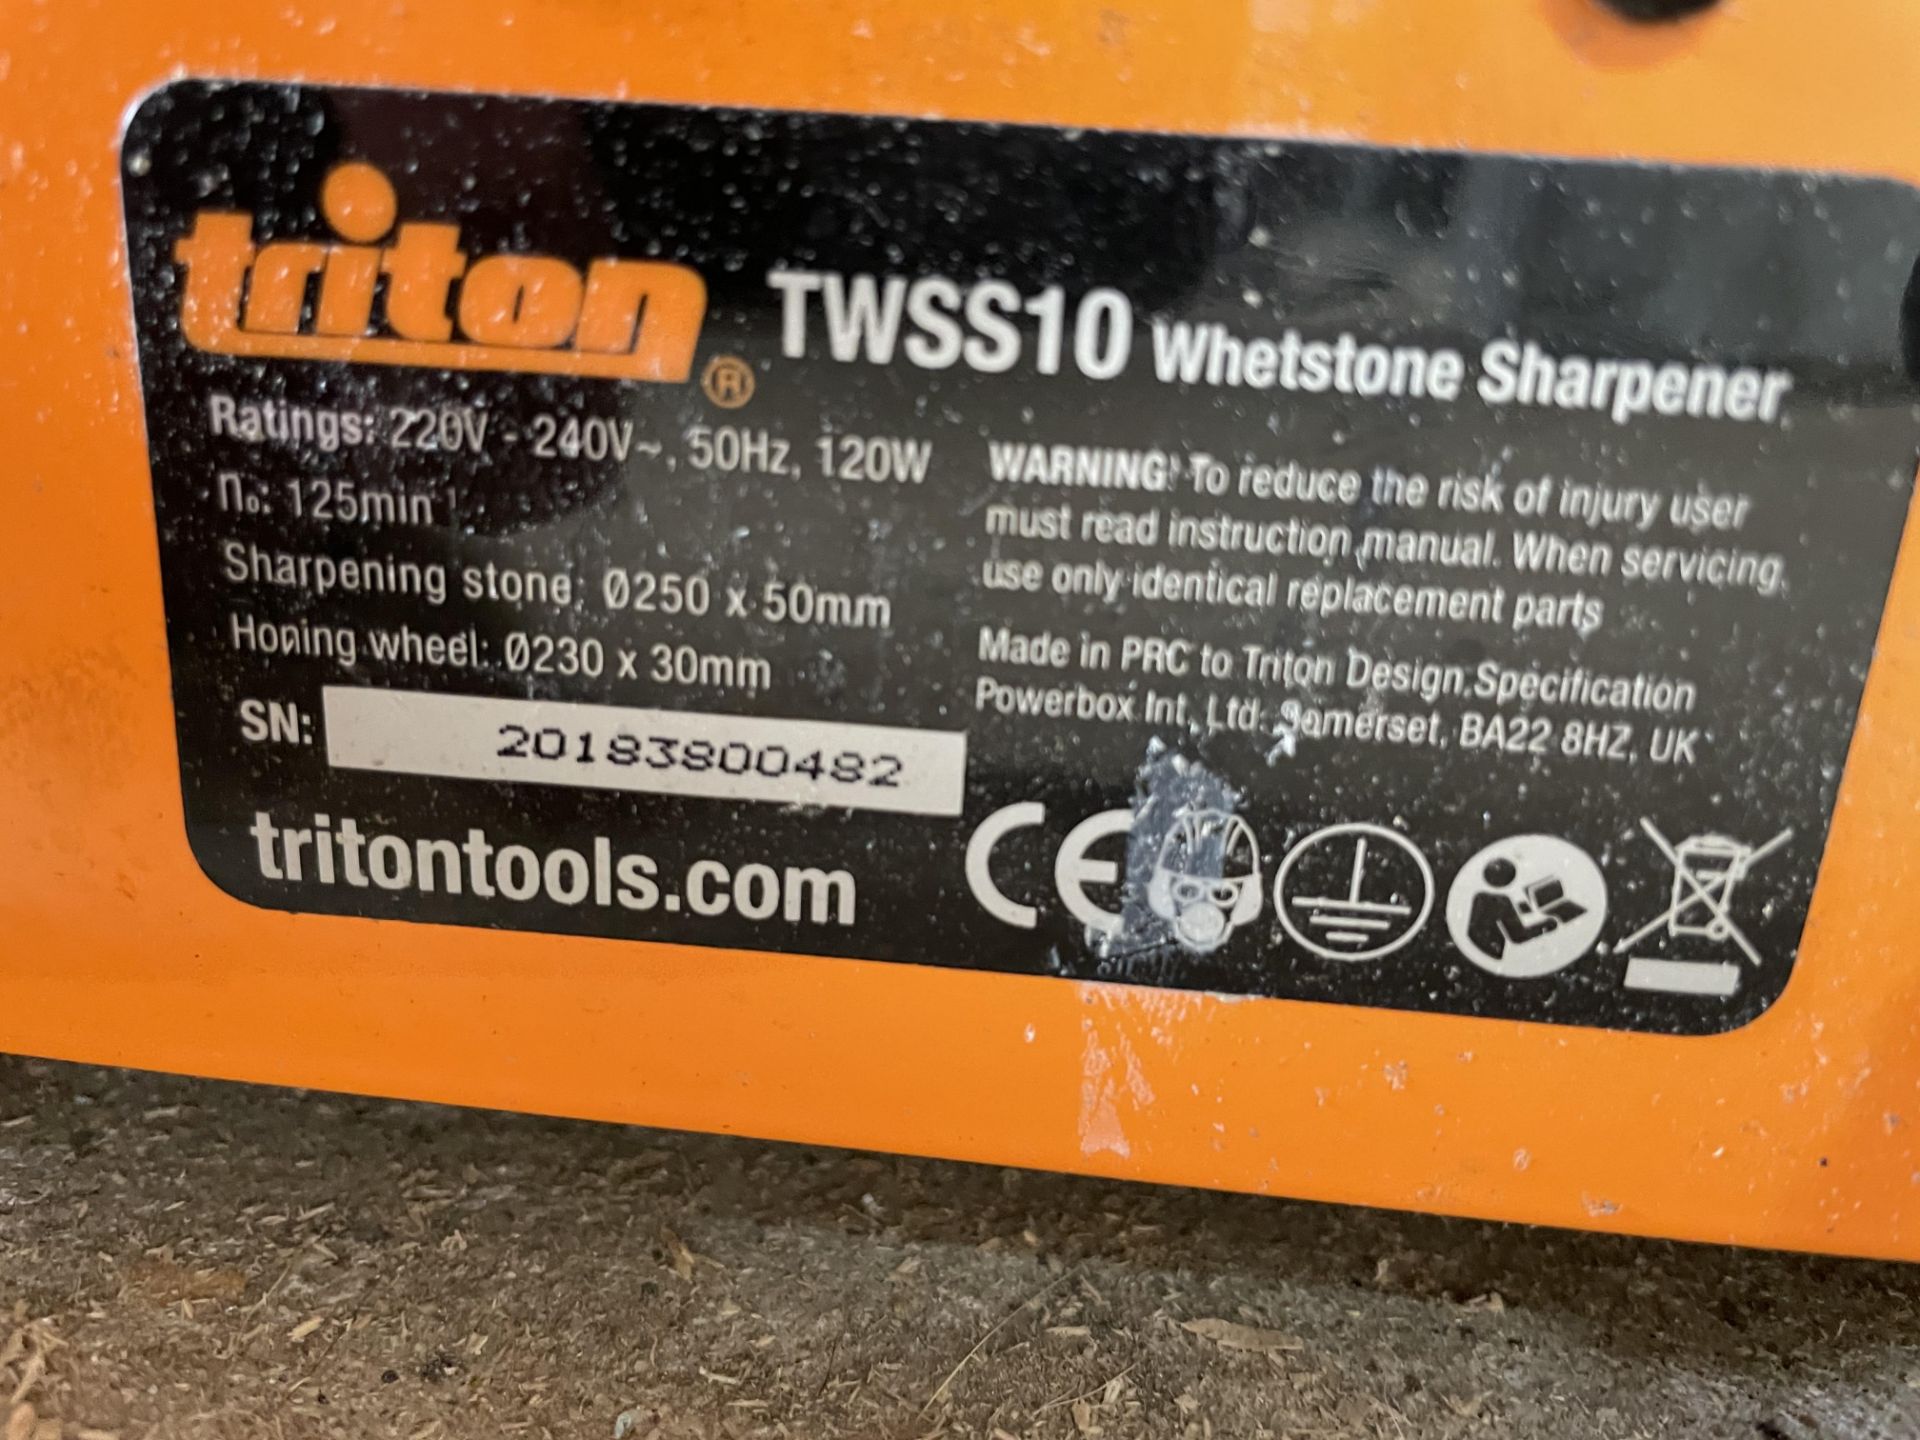 Triton TWSS10 Whetstone Sharpener - 220V-240V - Serial Number - 20183800482. - Image 3 of 3